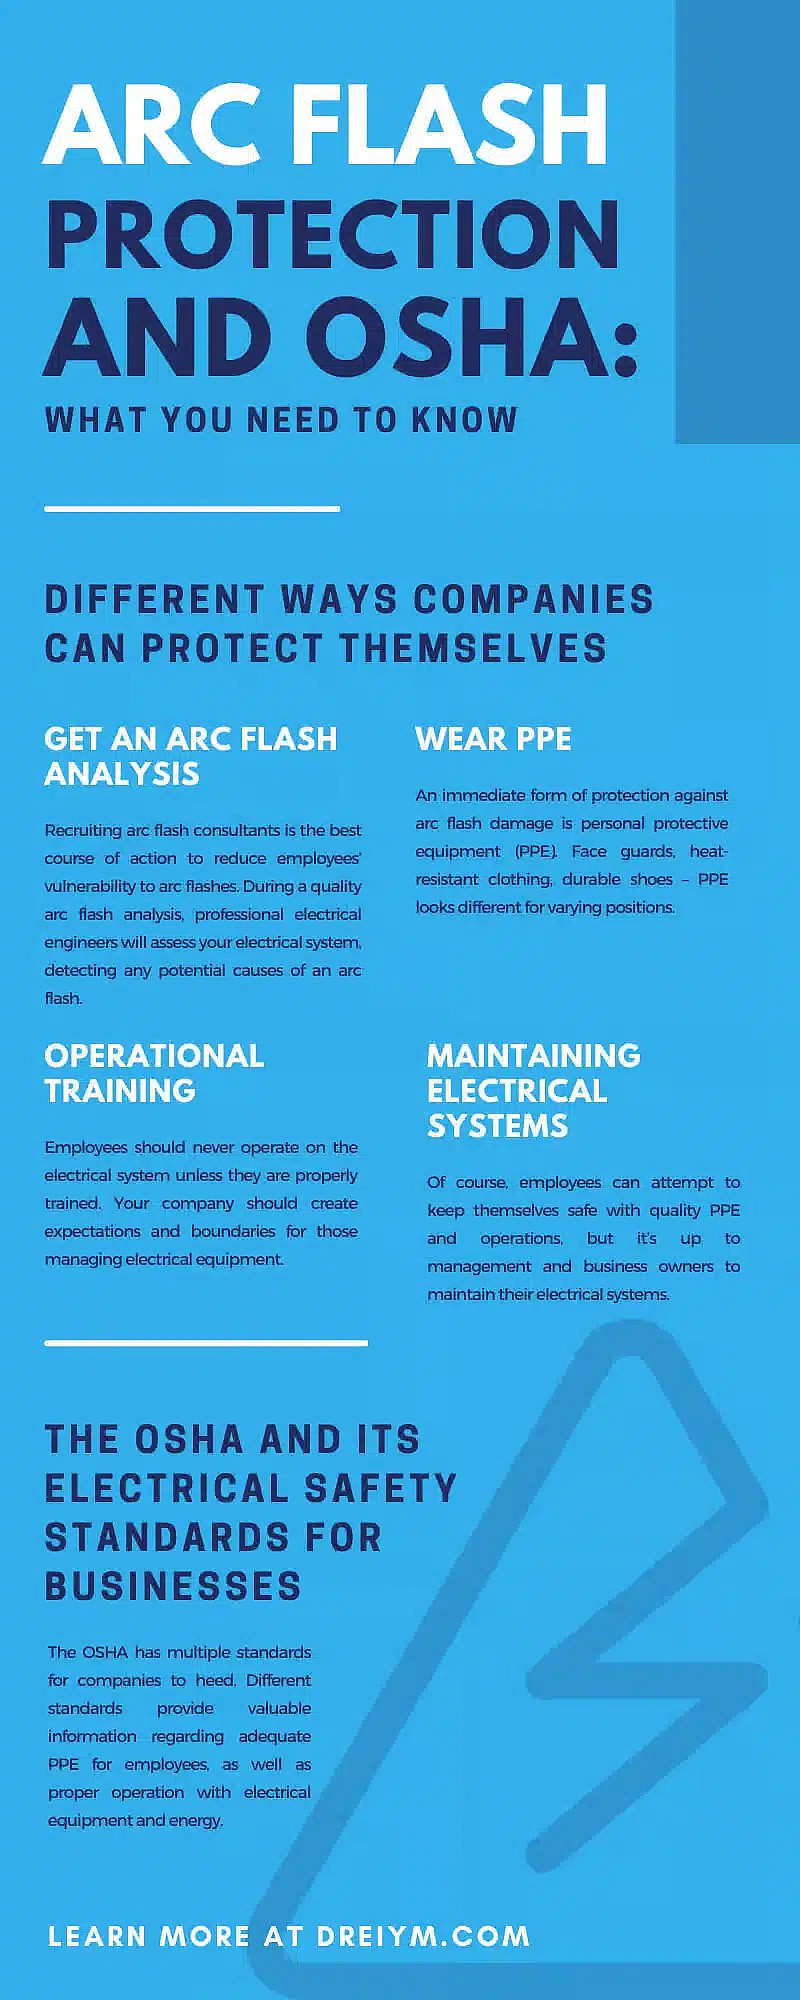 Προστασία Arc Flash και OSHA: Τι πρέπει να ξέρετε